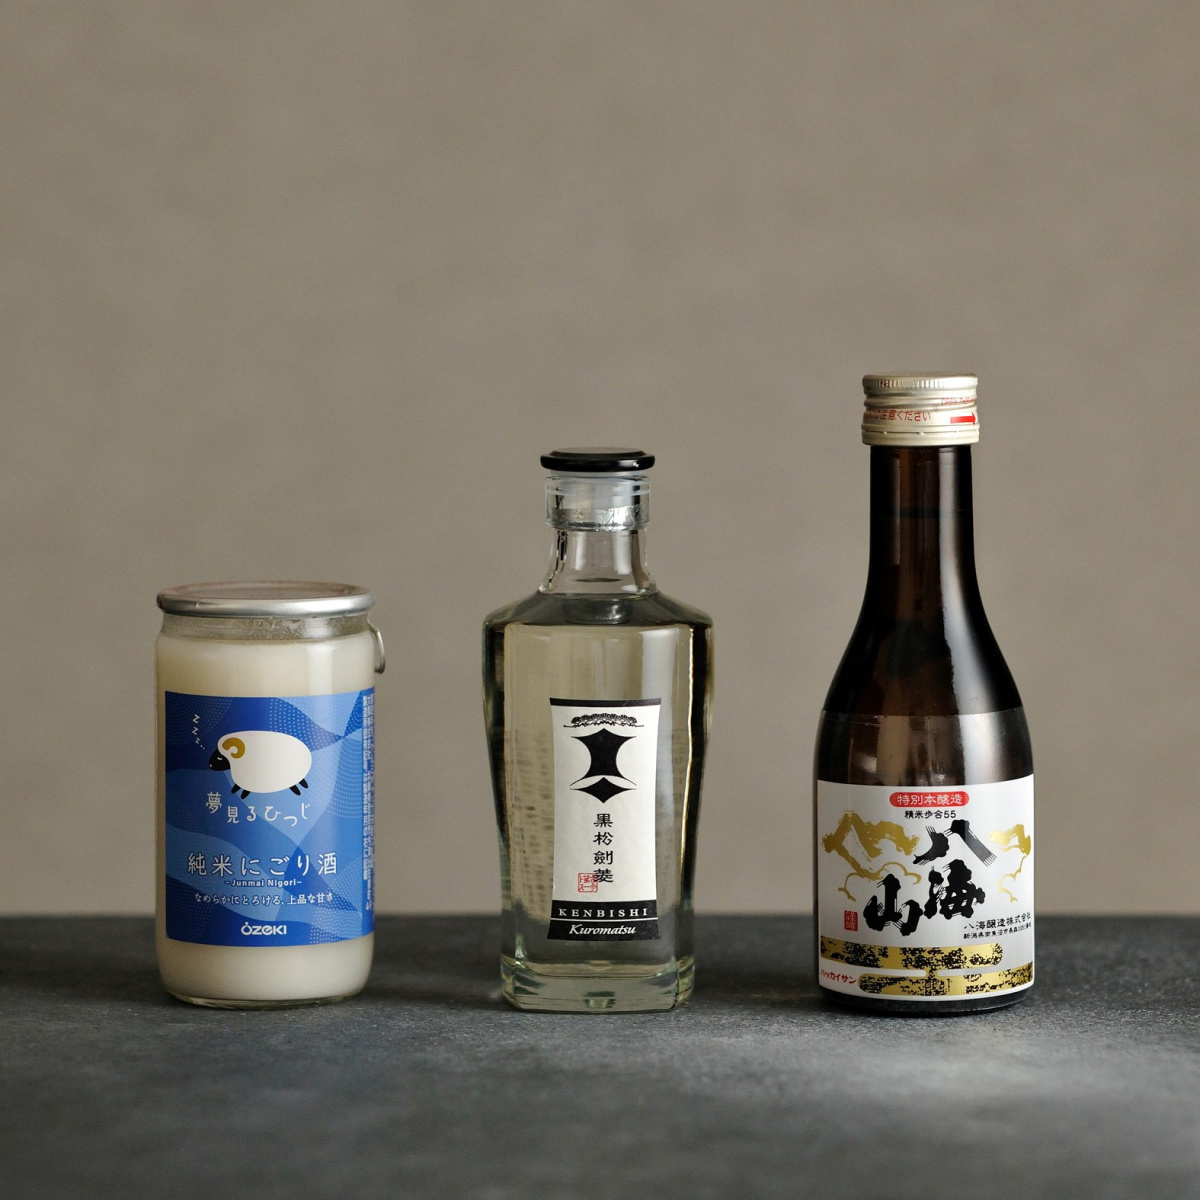 目利きが選んだ 飲み切りサイズ の身近な店で買える旨い日本酒5選 Pen Online